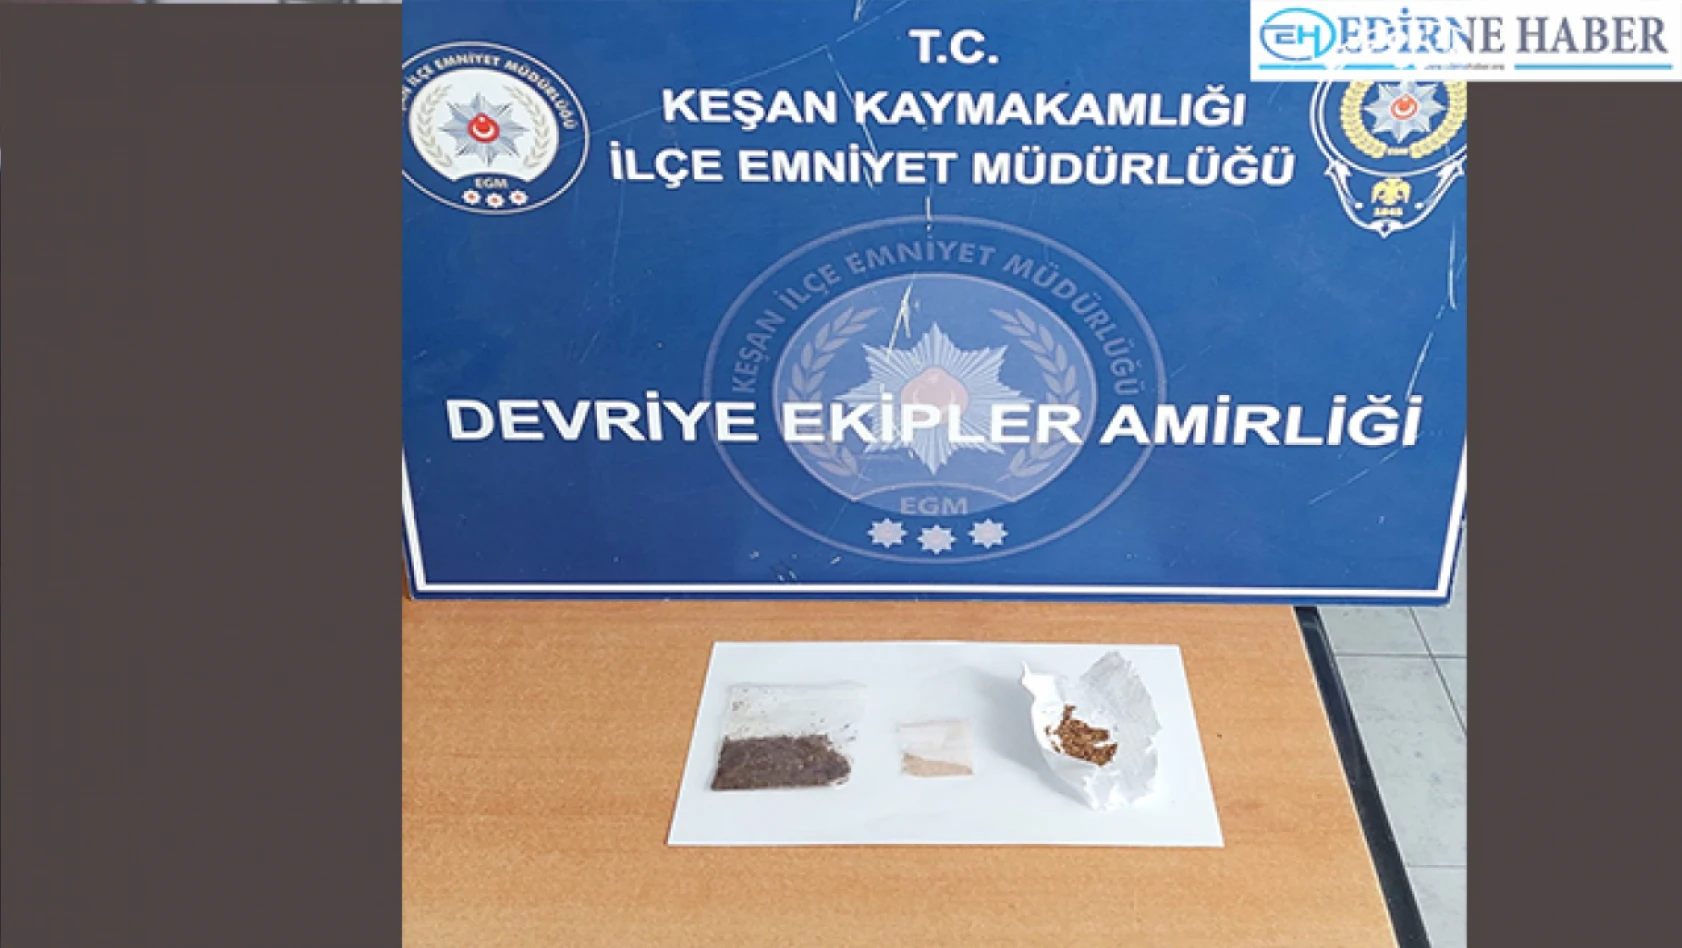 Edirne'nin Keşan ilçesinde uyuşturucu ticareti yaptıkları öne sürülen 5 şüpheli gözaltına alındı.